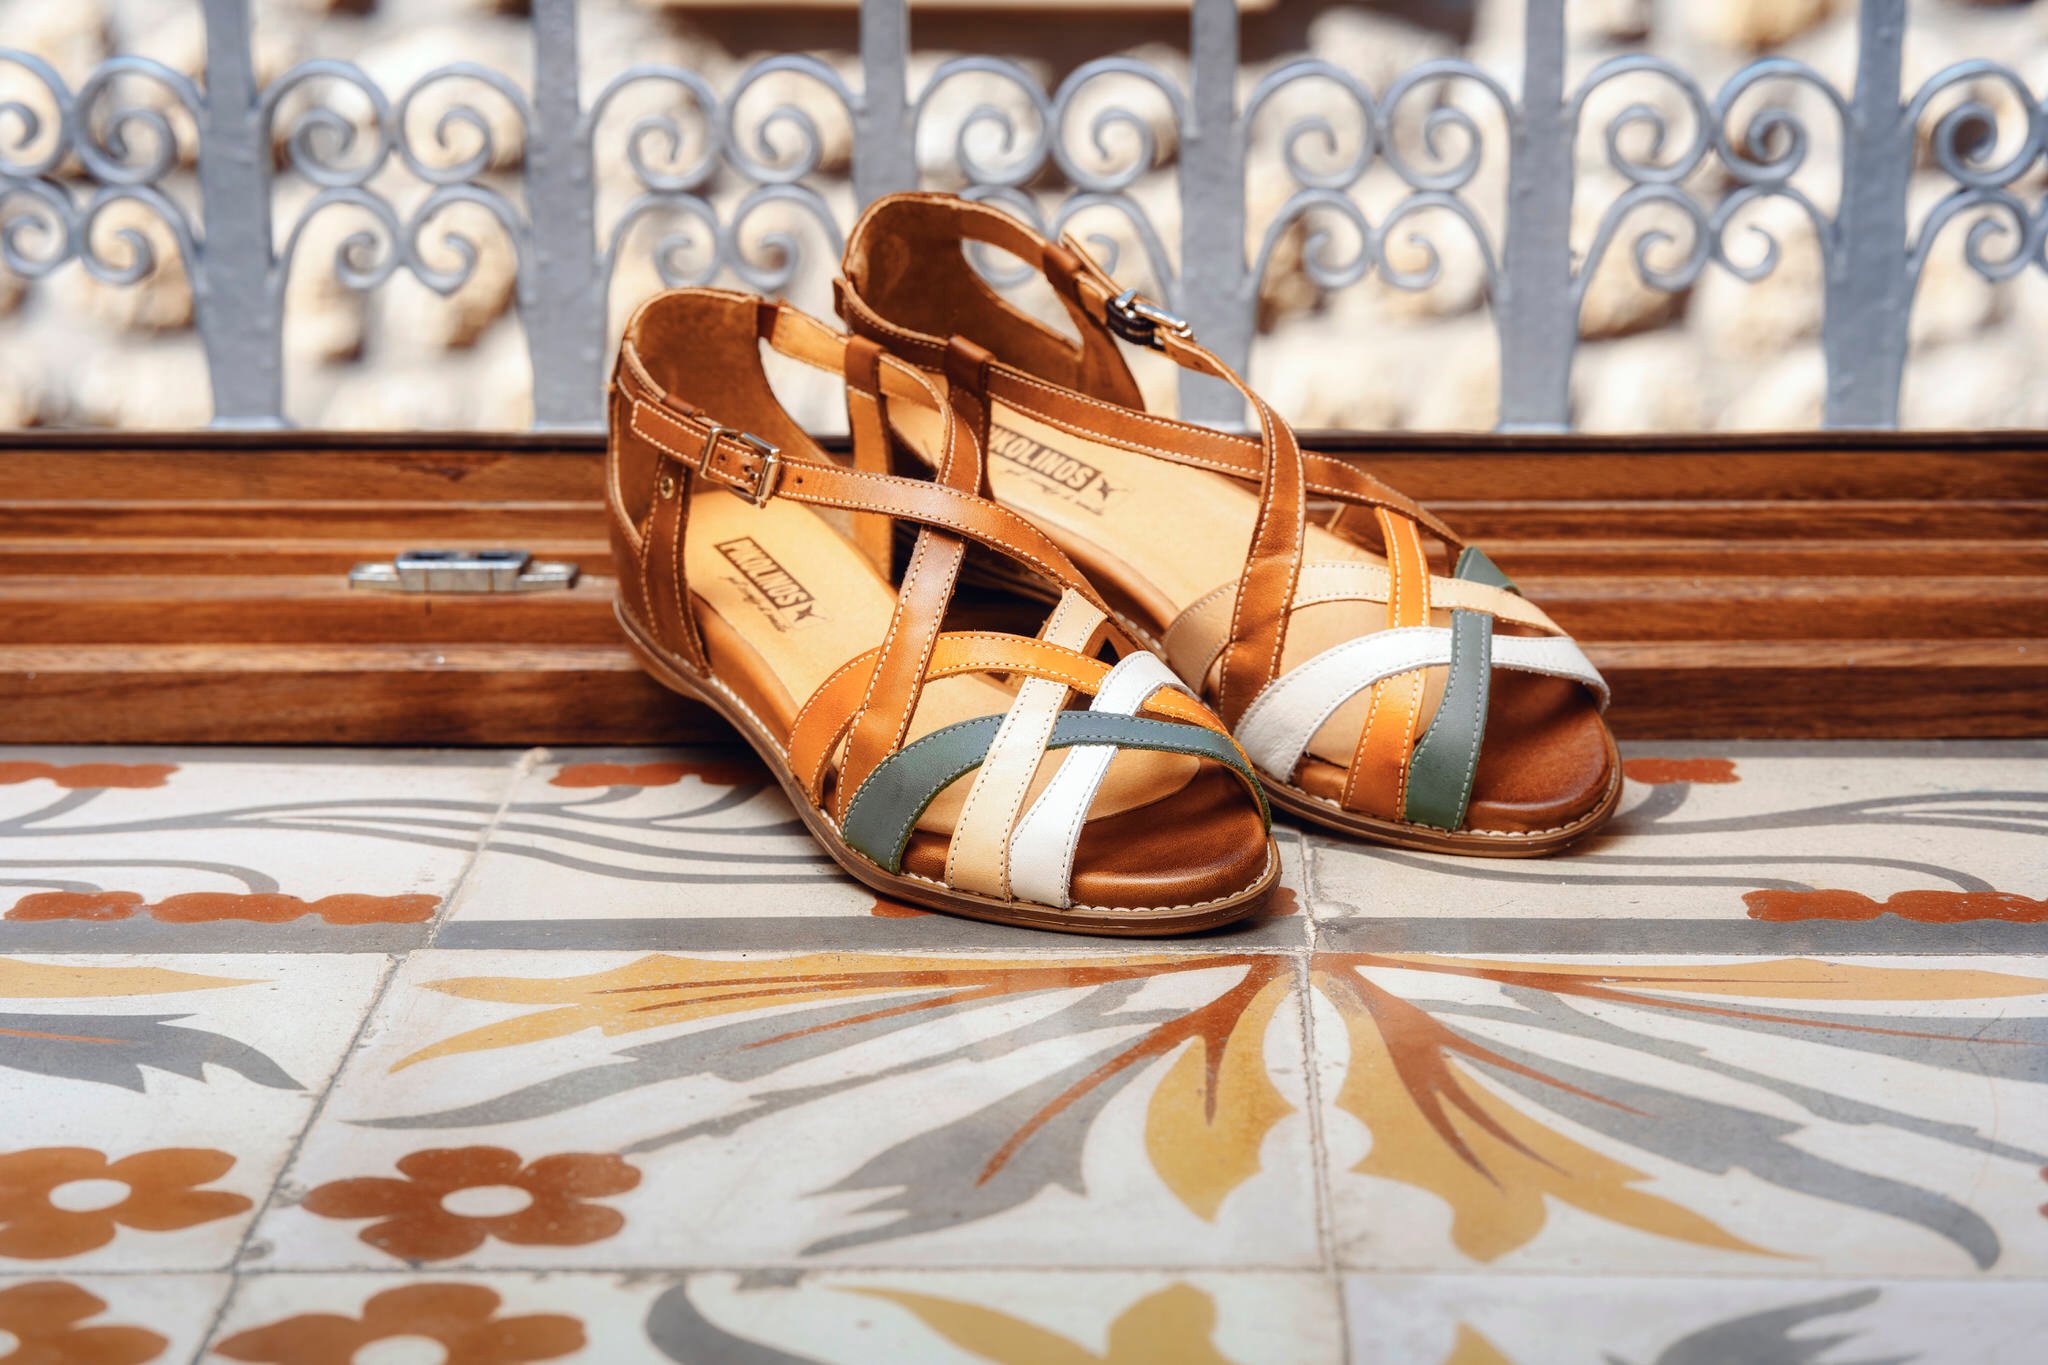 Photographie de sandales pour femmes Pikolinos à l'hôtel Ca'n Abril